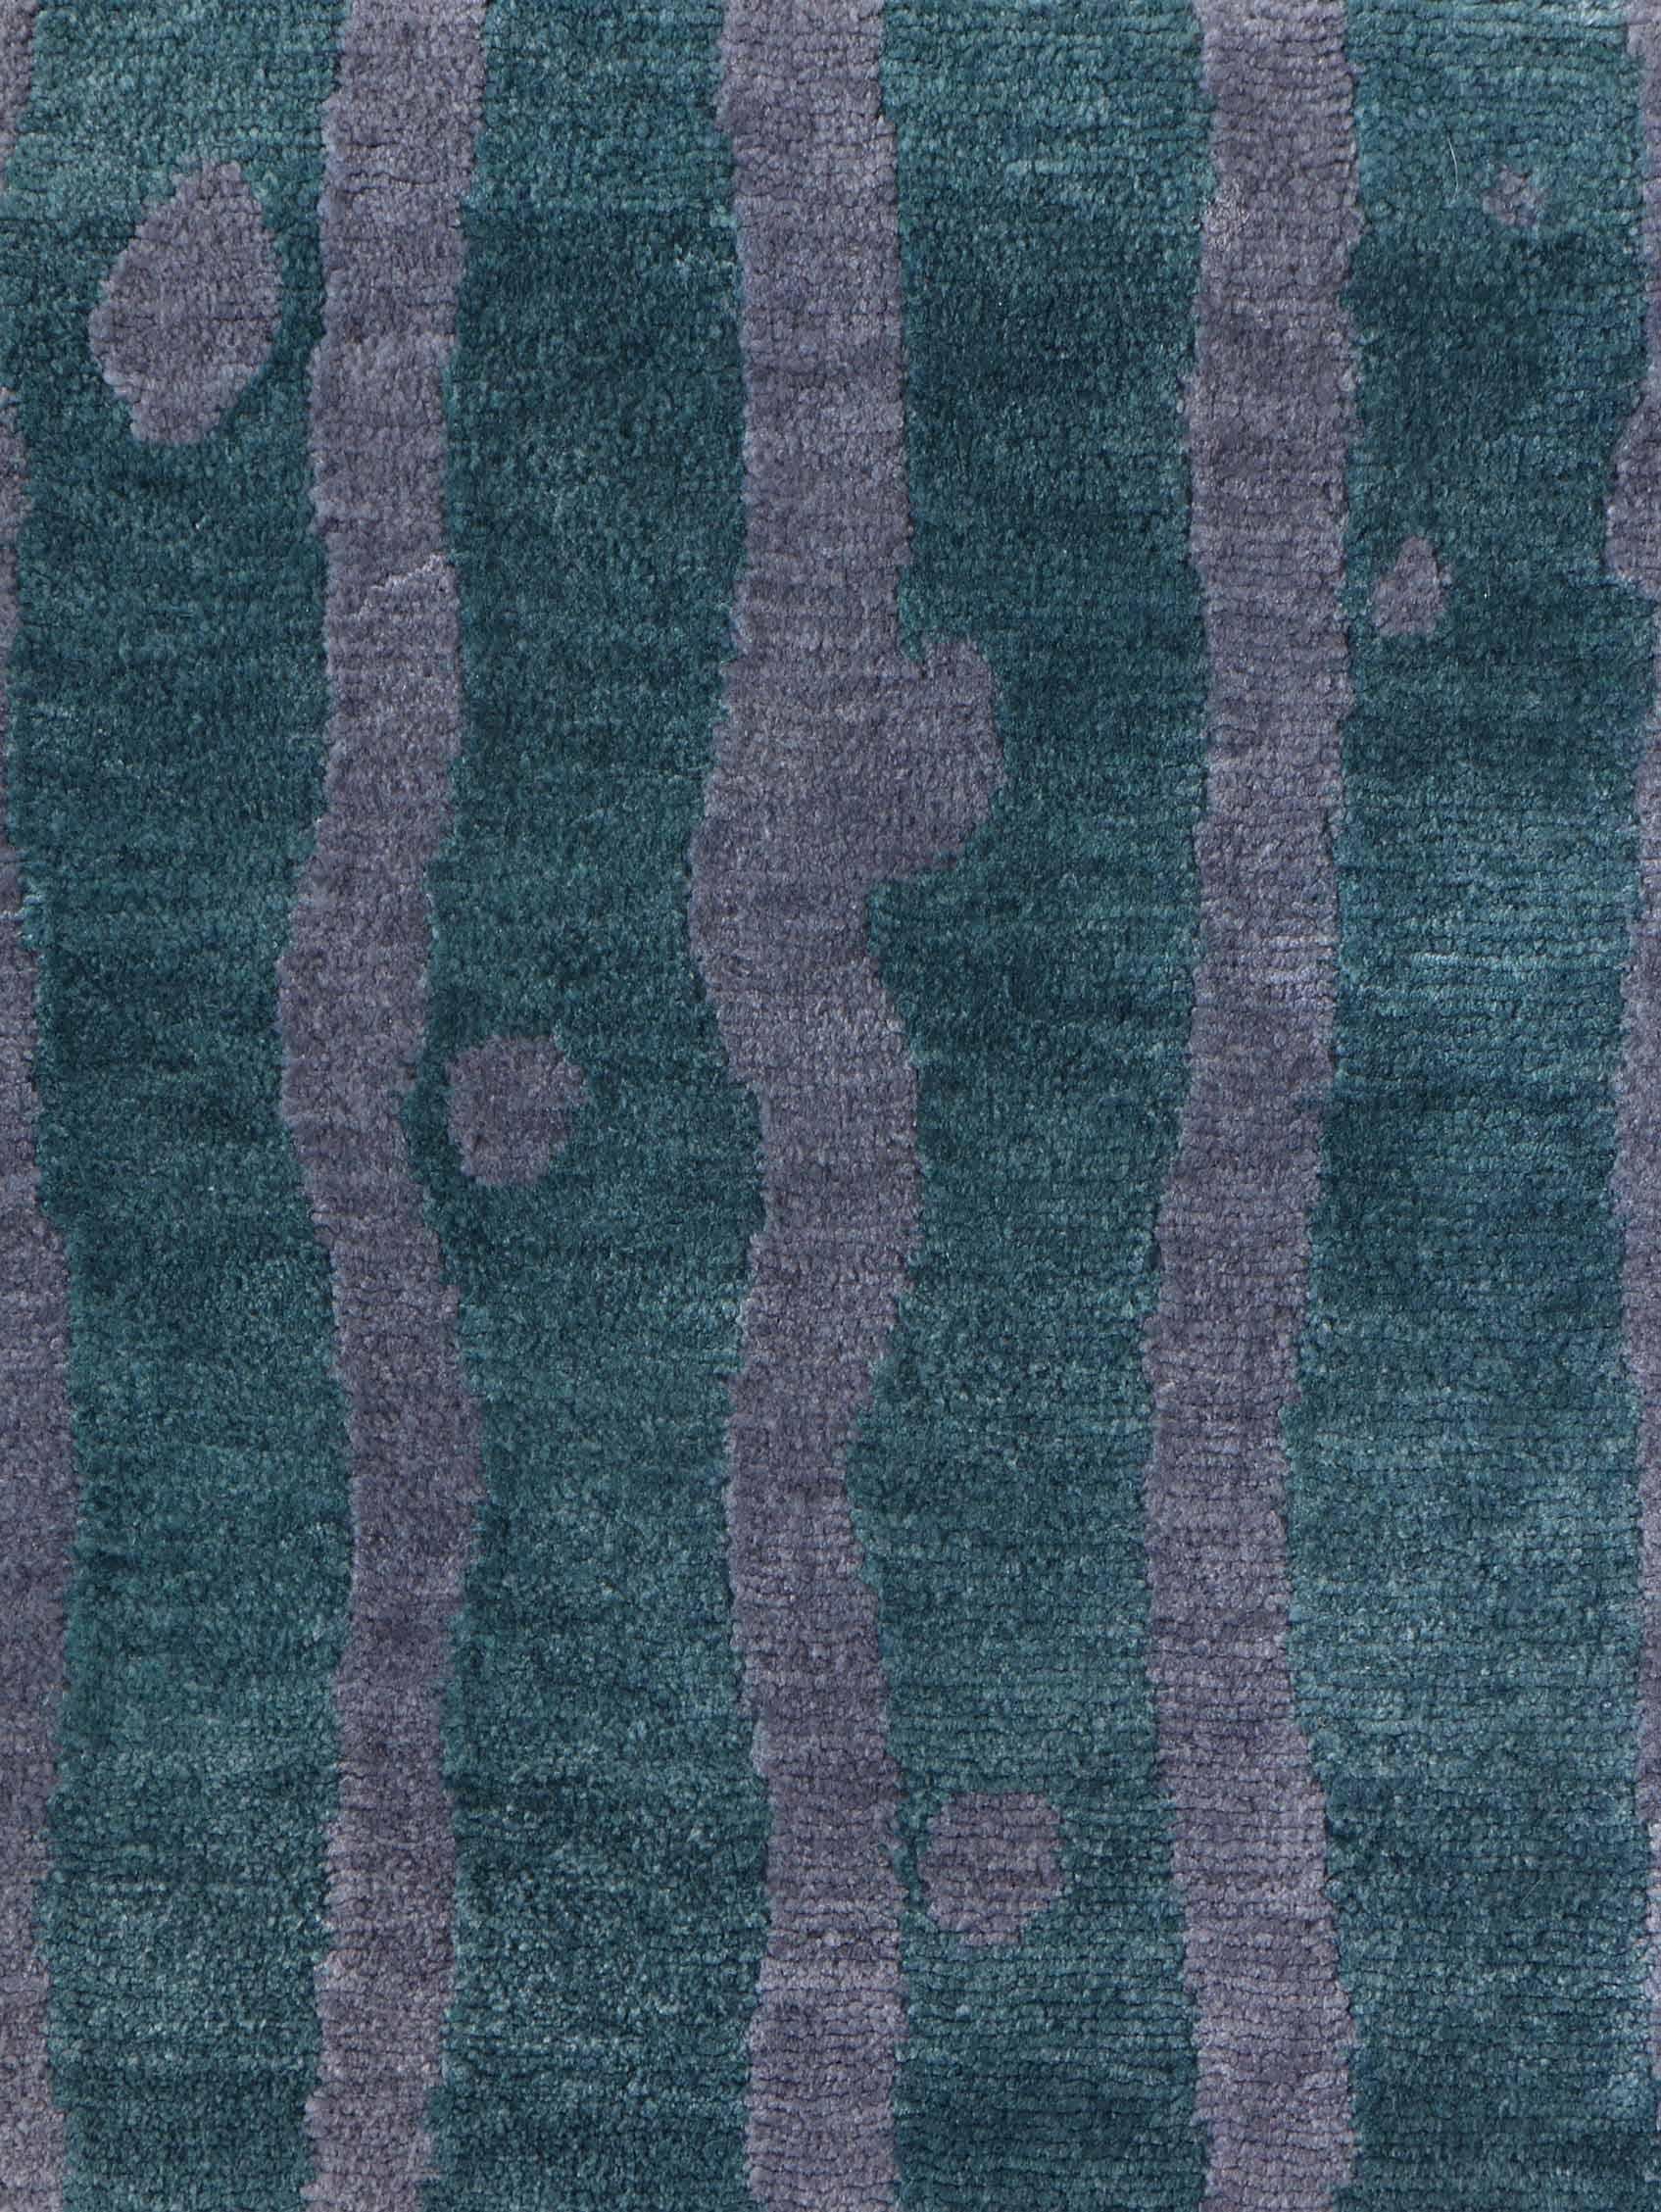 Muster des Teppichs: Drippy Stripe - Golf
MATERIAL: 100% Merinowolle
Qualität: Tibetisches Kreuzgeflecht, handgewebt 
Größe: 8'-0